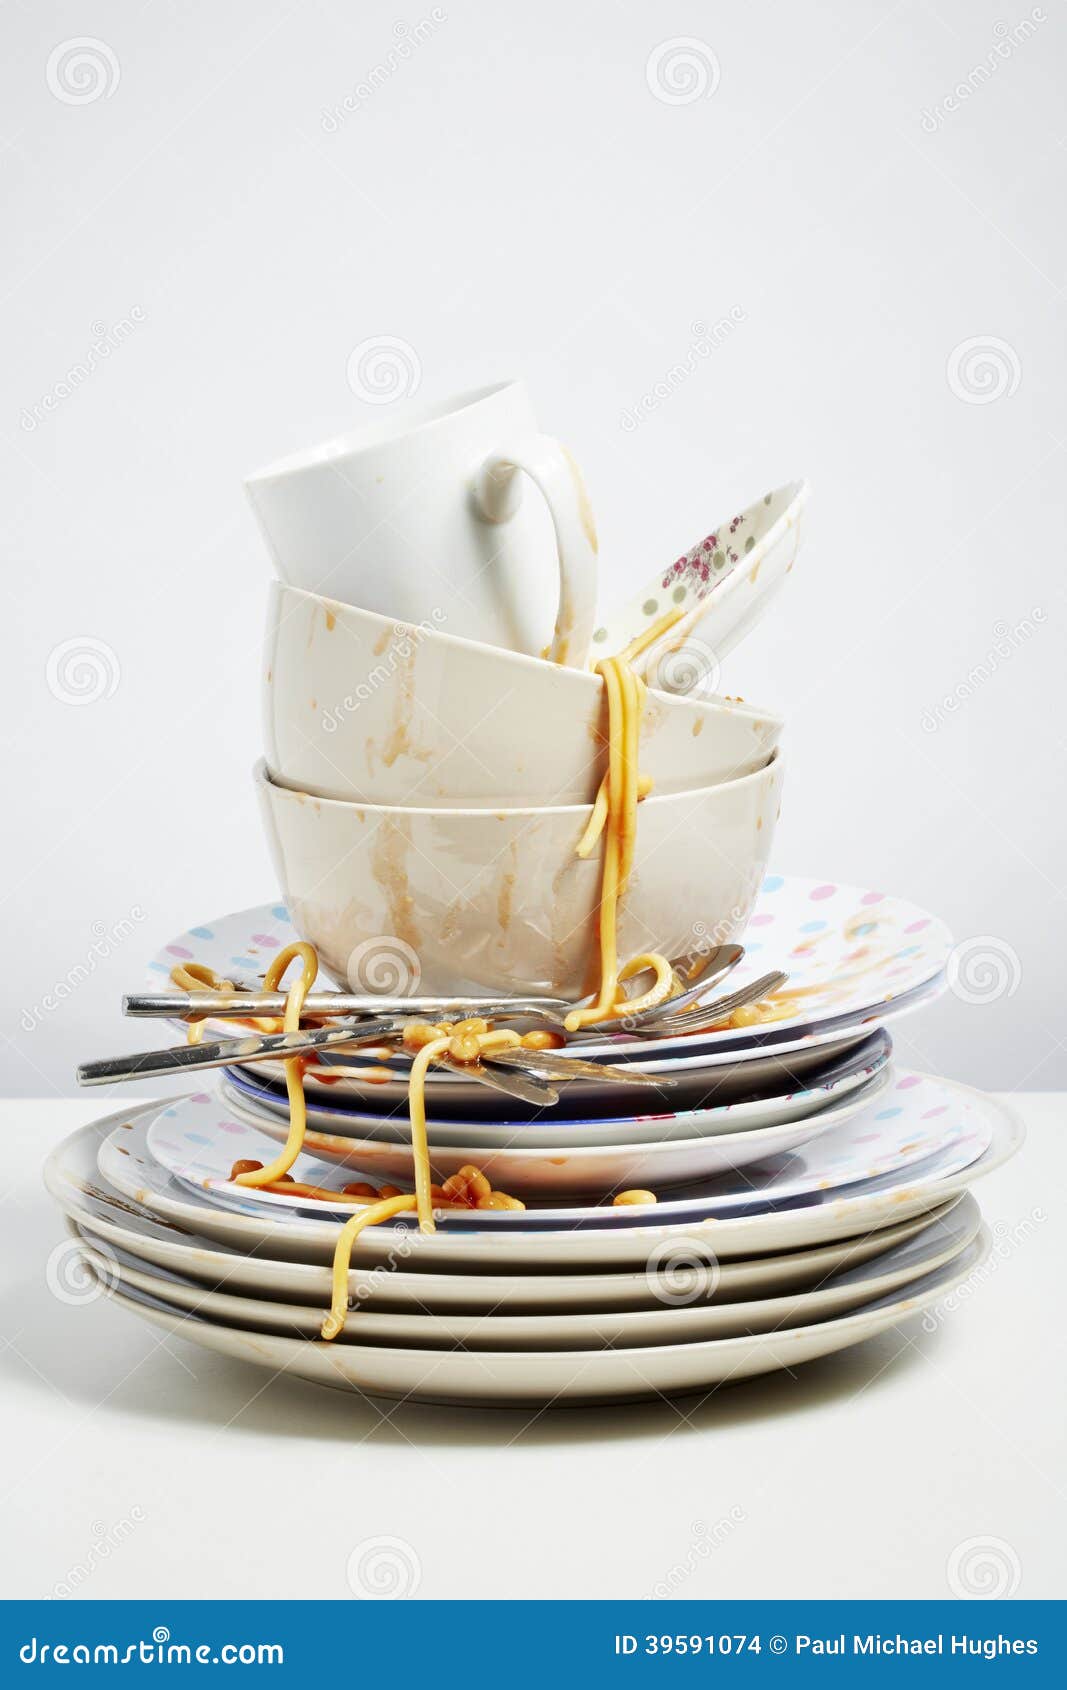 dirty dishes pile needing washing up on white background